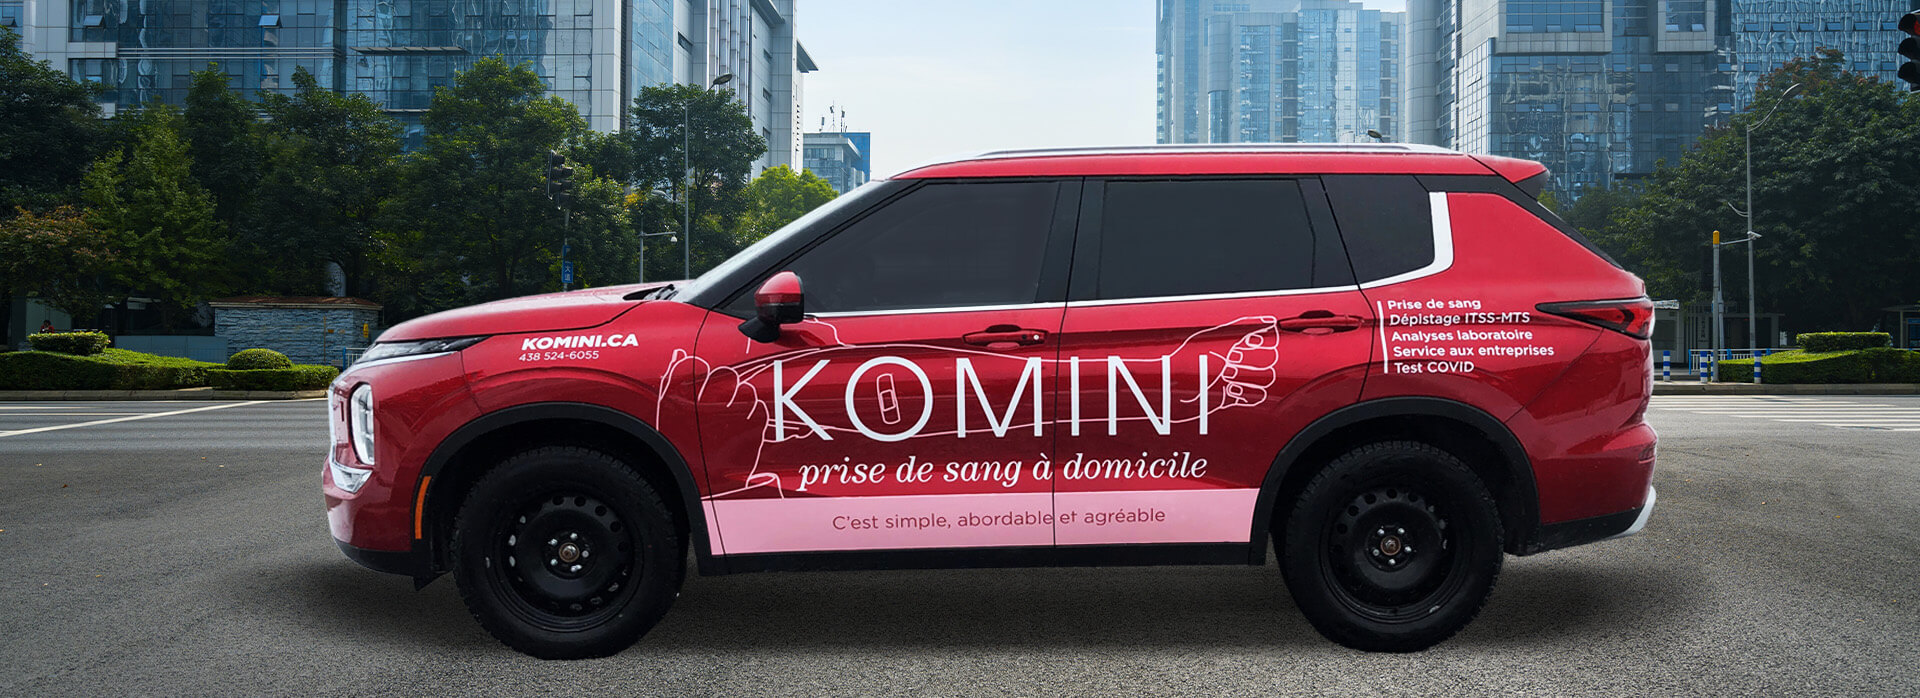 lettrage de véhicule Komini prise de sang à domicile test covid